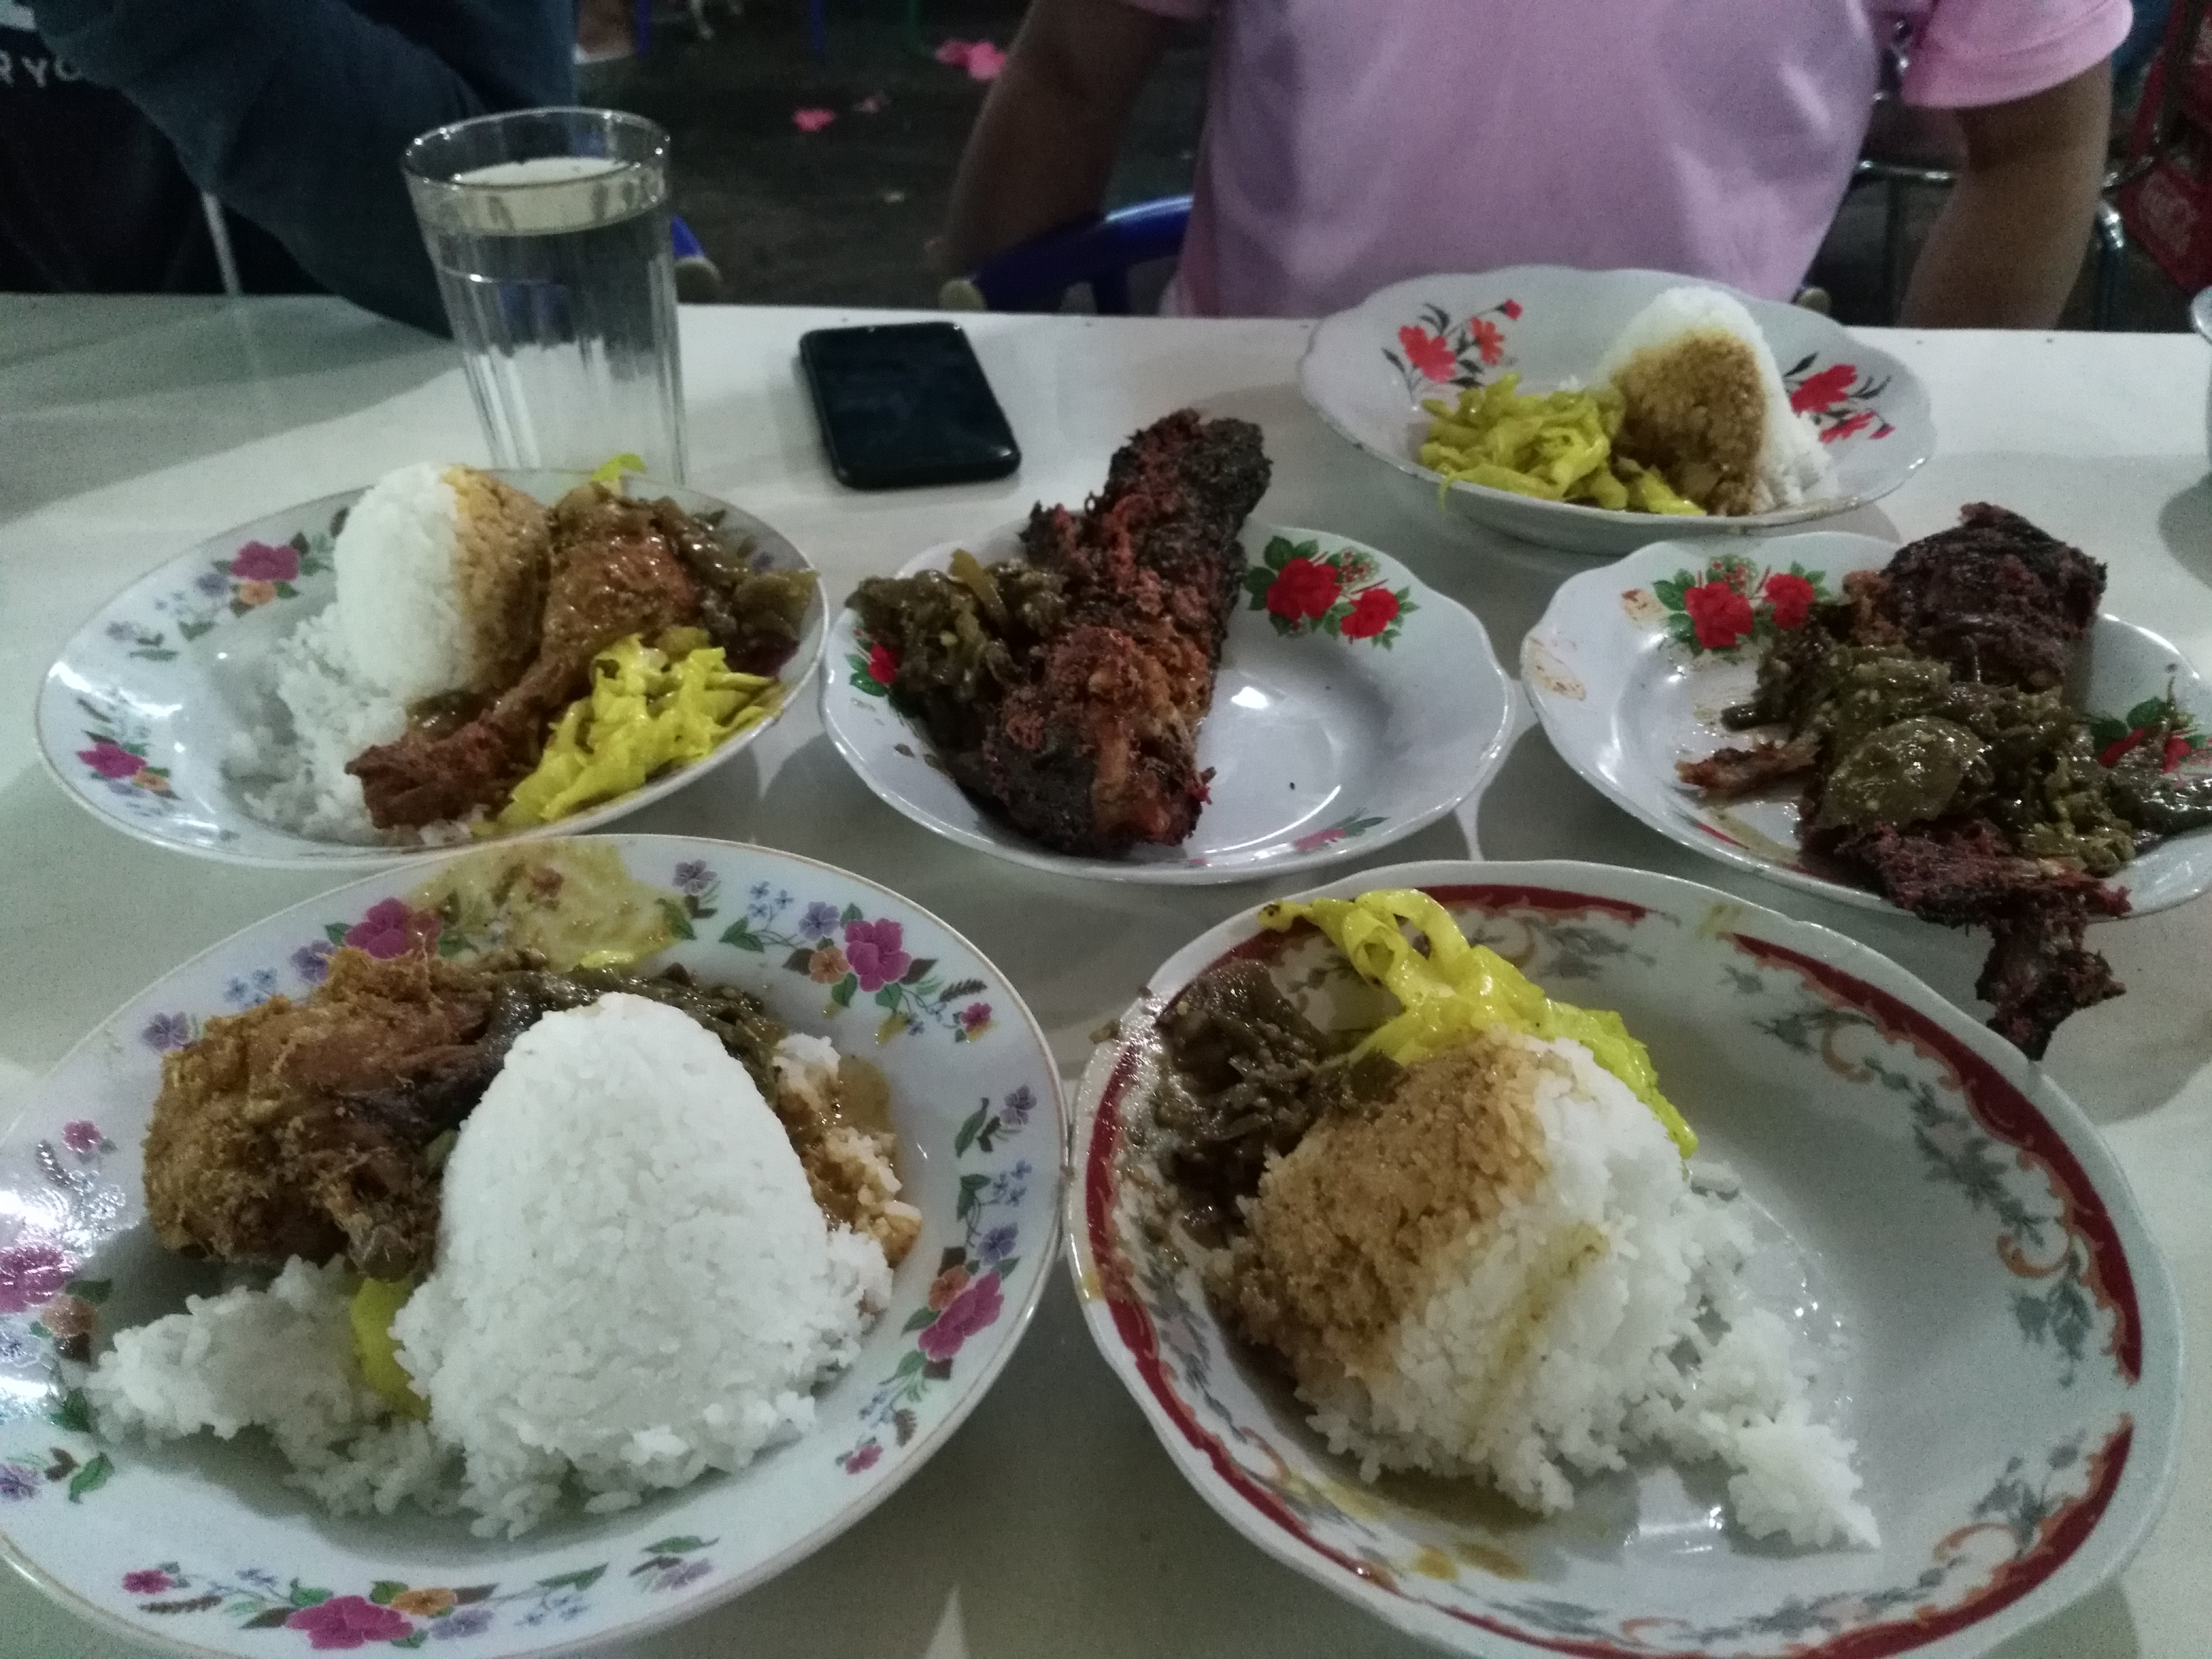 Ikan and nasi (fish and rice).